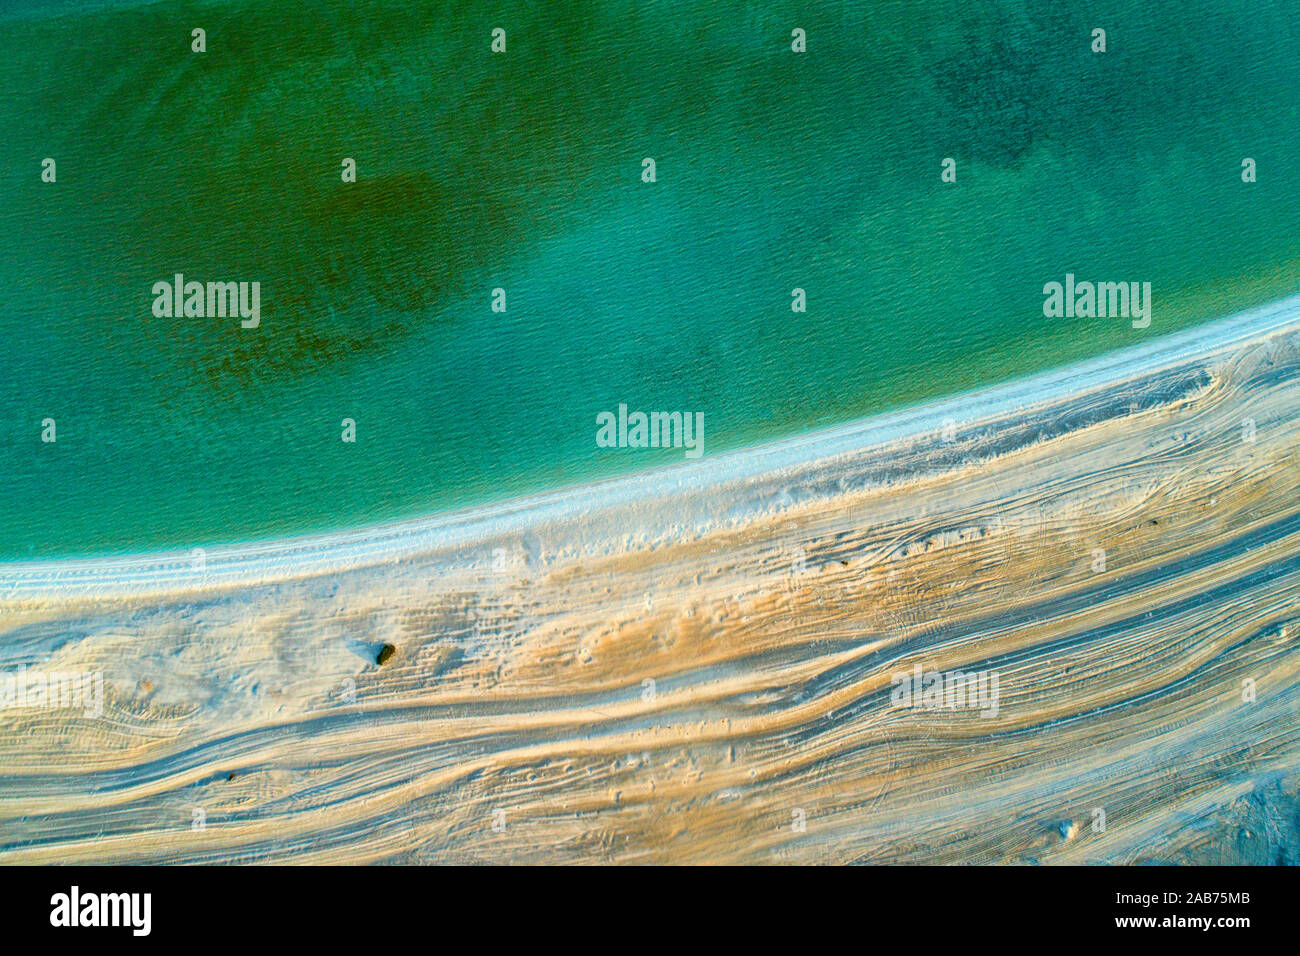 Vista aérea de la playa de Shell Zona patrimonio de la humanidad, Península de Perón, al noroeste de Australia, Australia Occidental Foto de stock